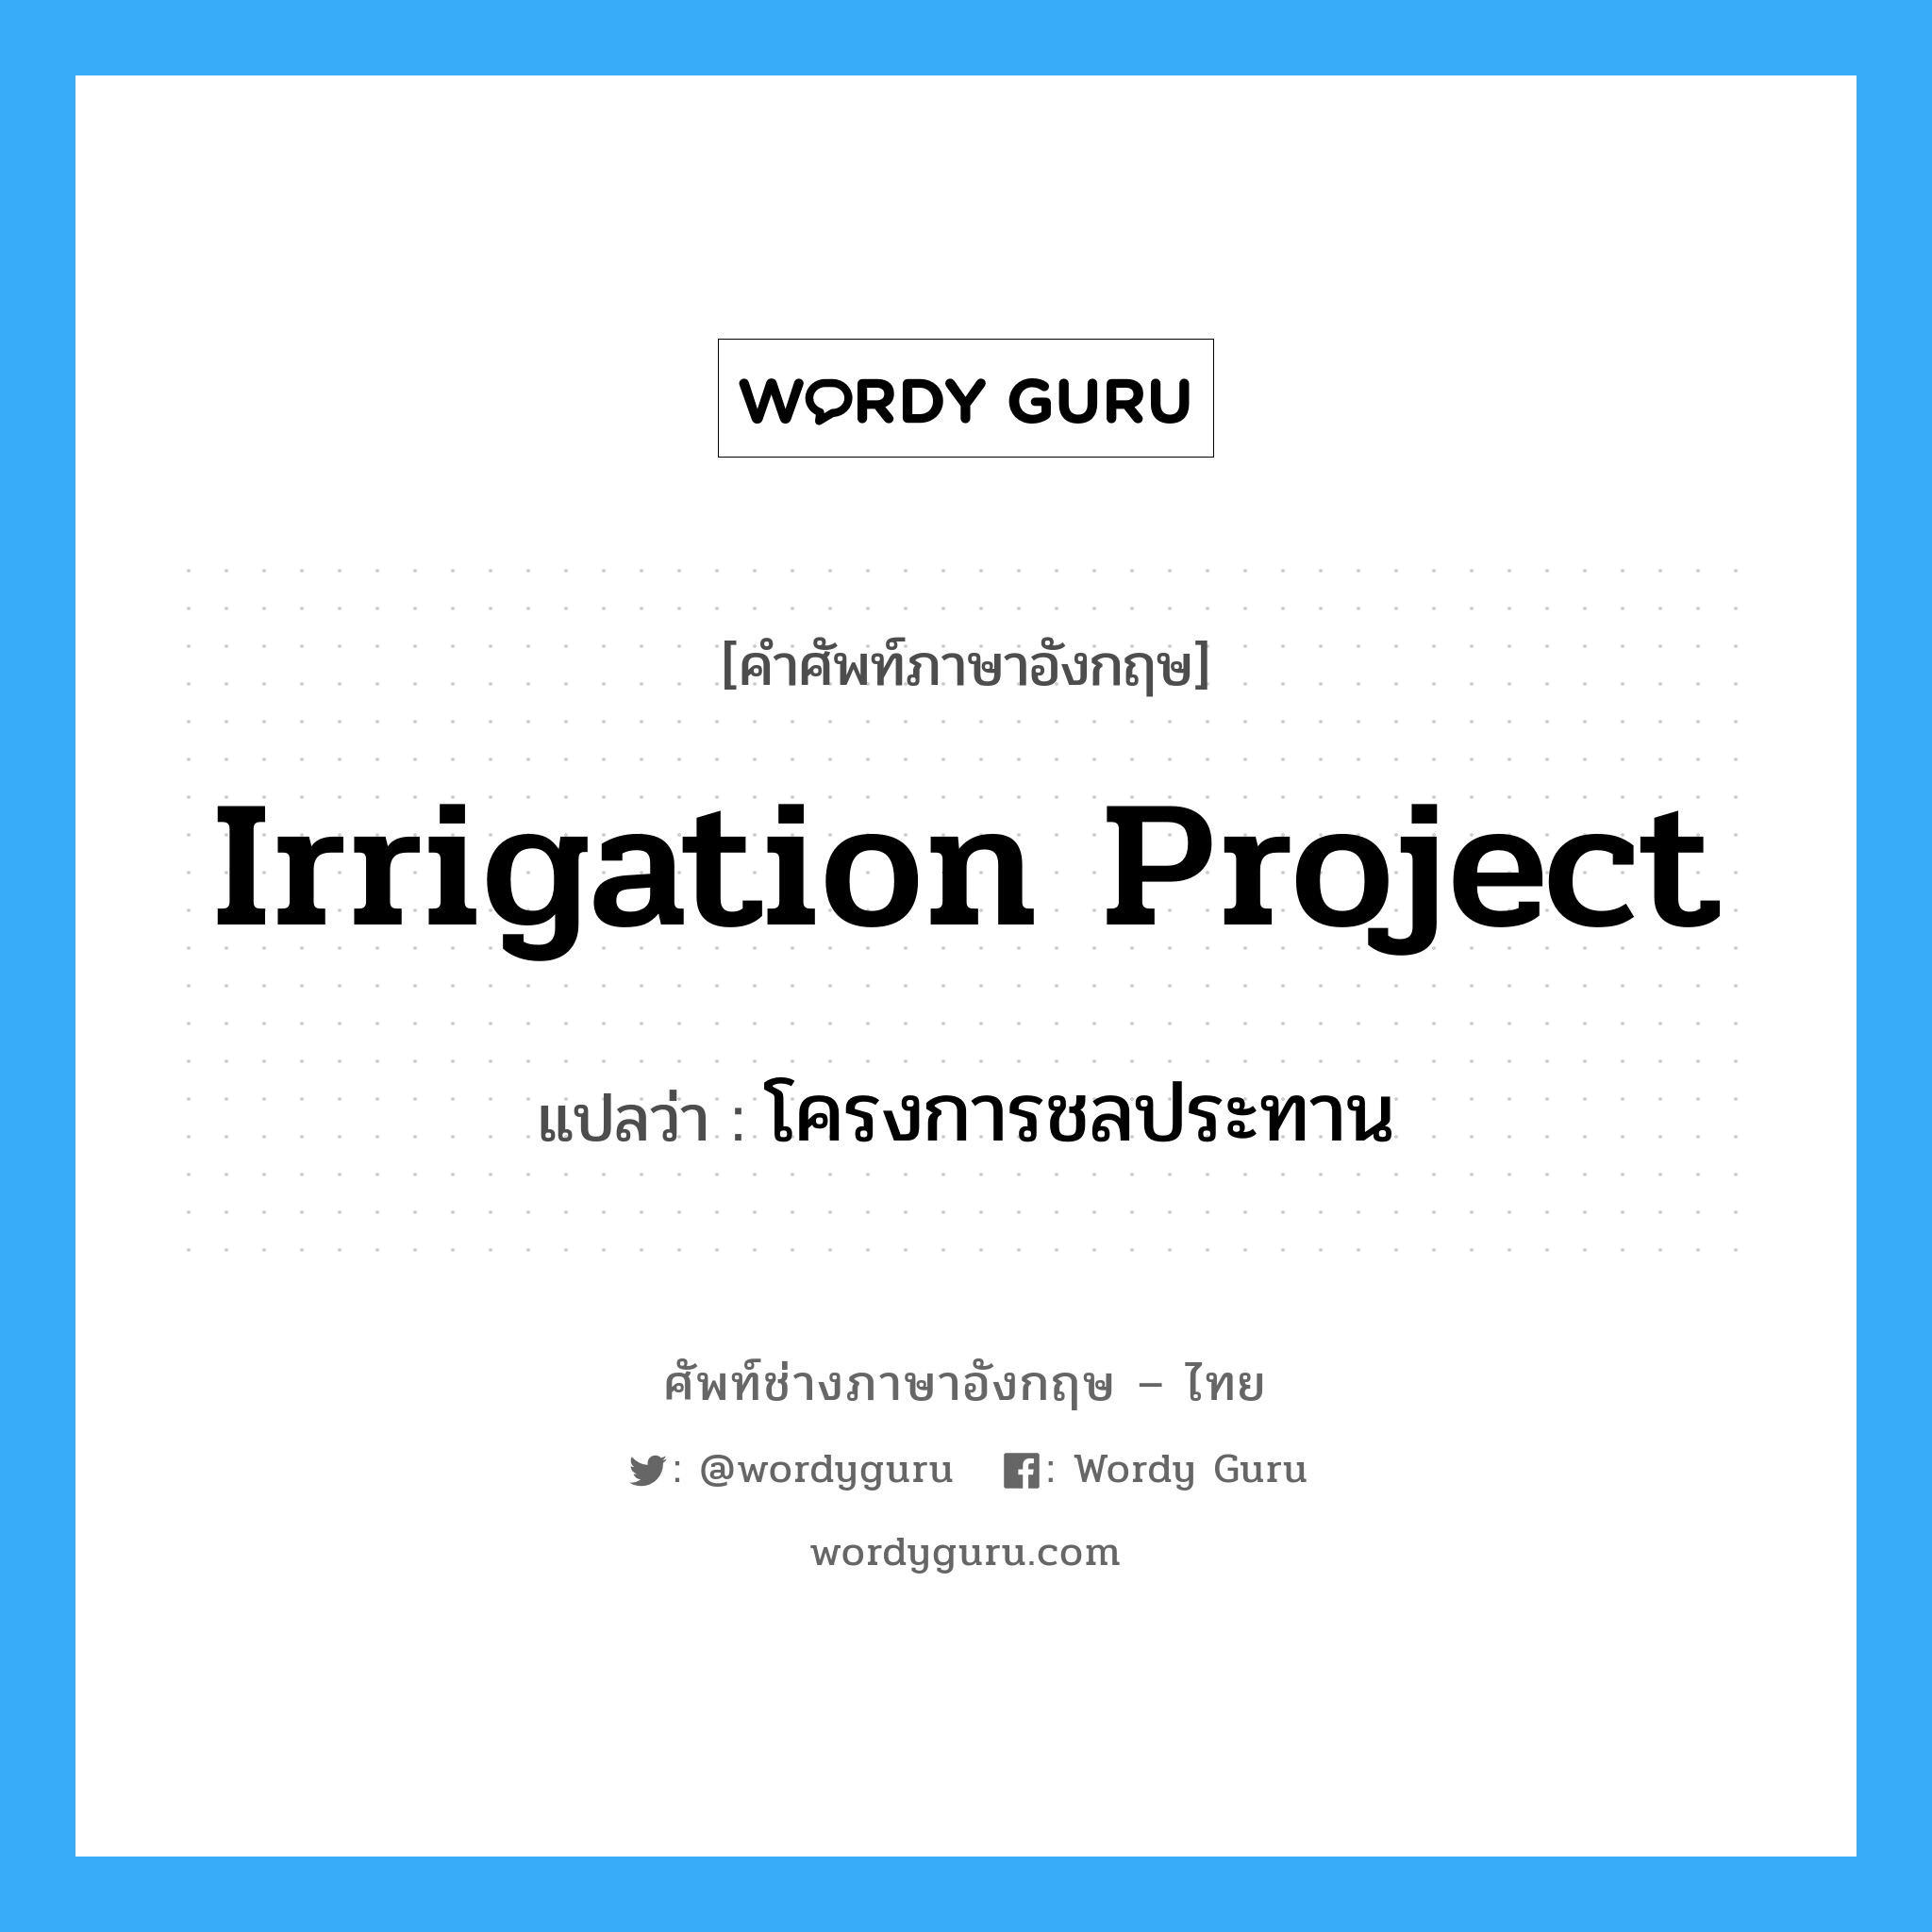 โครงการชลประทาน ภาษาอังกฤษ?, คำศัพท์ช่างภาษาอังกฤษ - ไทย โครงการชลประทาน คำศัพท์ภาษาอังกฤษ โครงการชลประทาน แปลว่า irrigation project